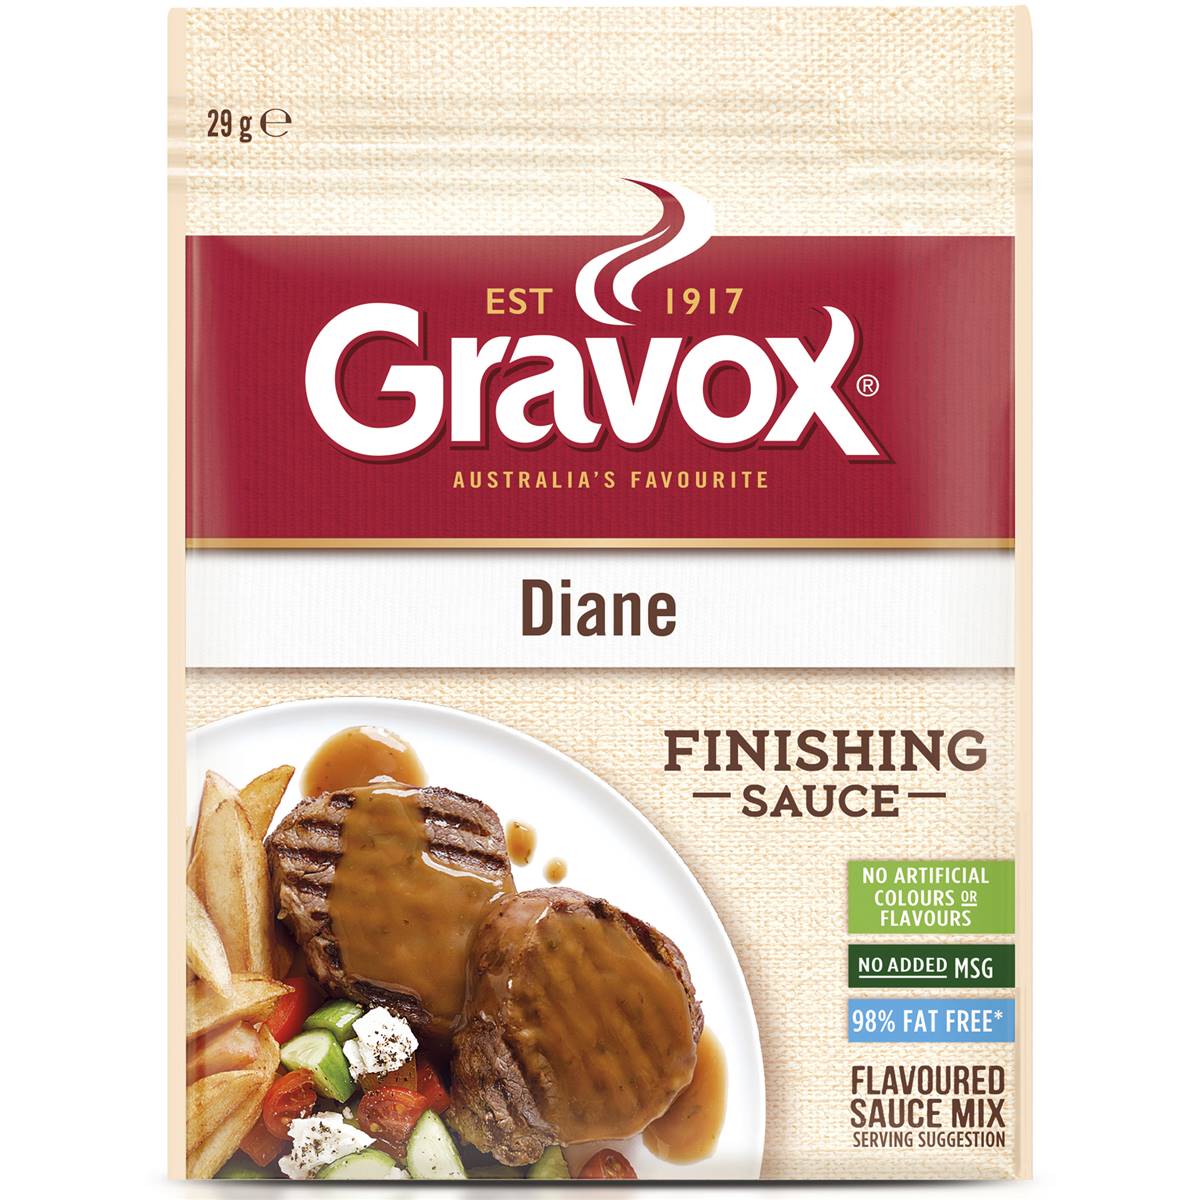 Calories in Gravox Gravy Liquid Diane Sauce